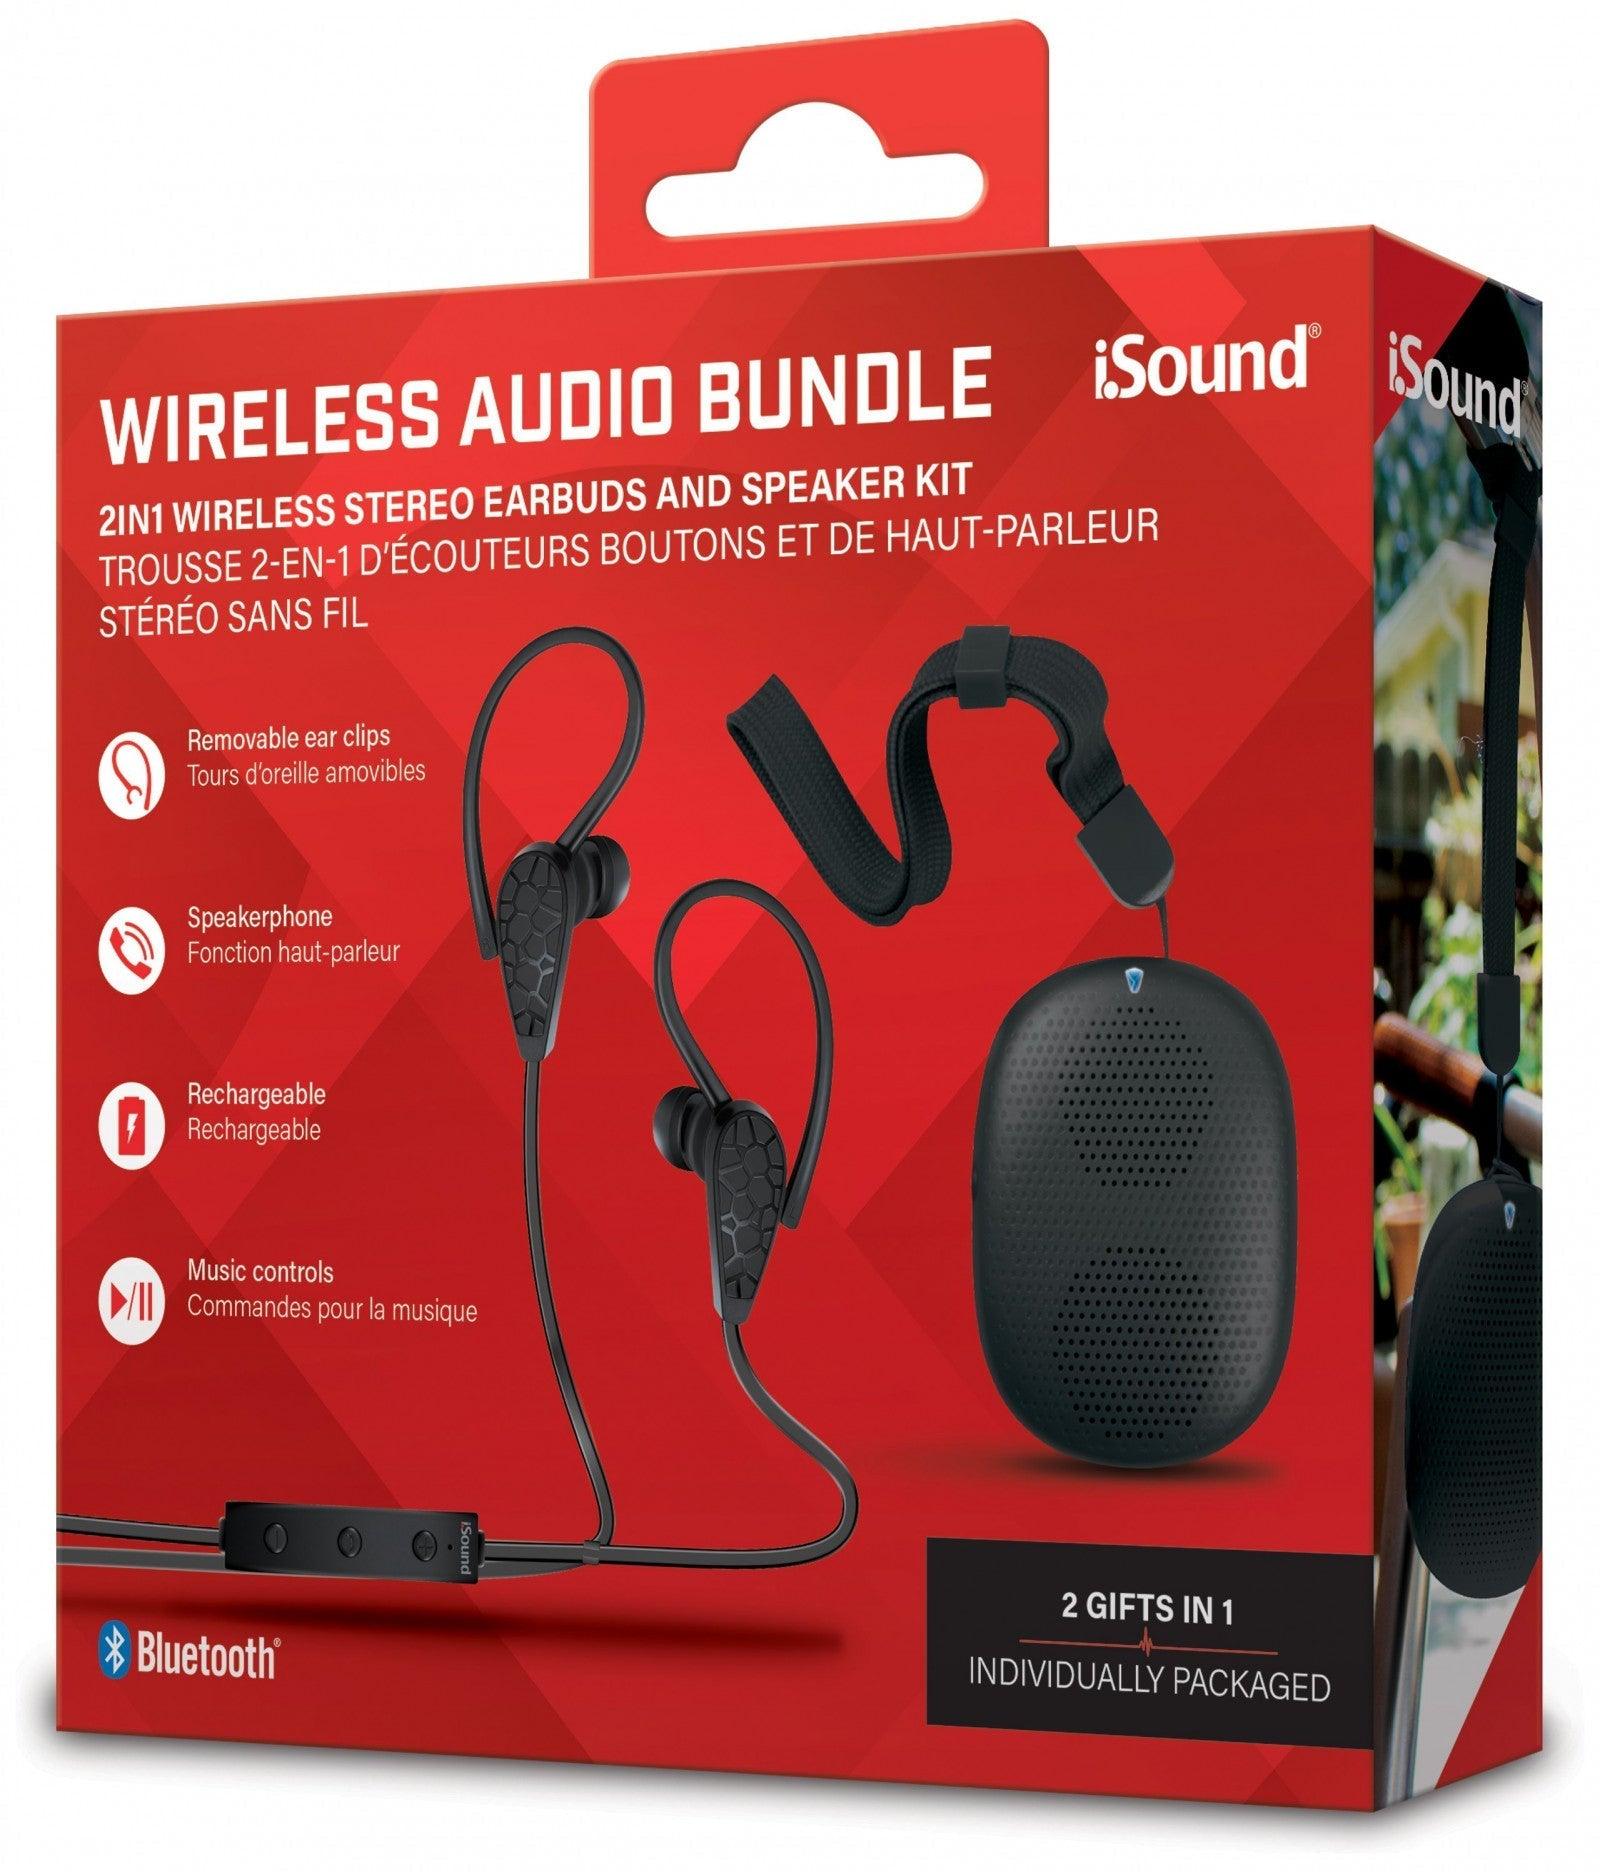 VR-83791 iSound Bluetooth Wireless Audio Bundle - Black - iSOUND - Titan Pop Culture